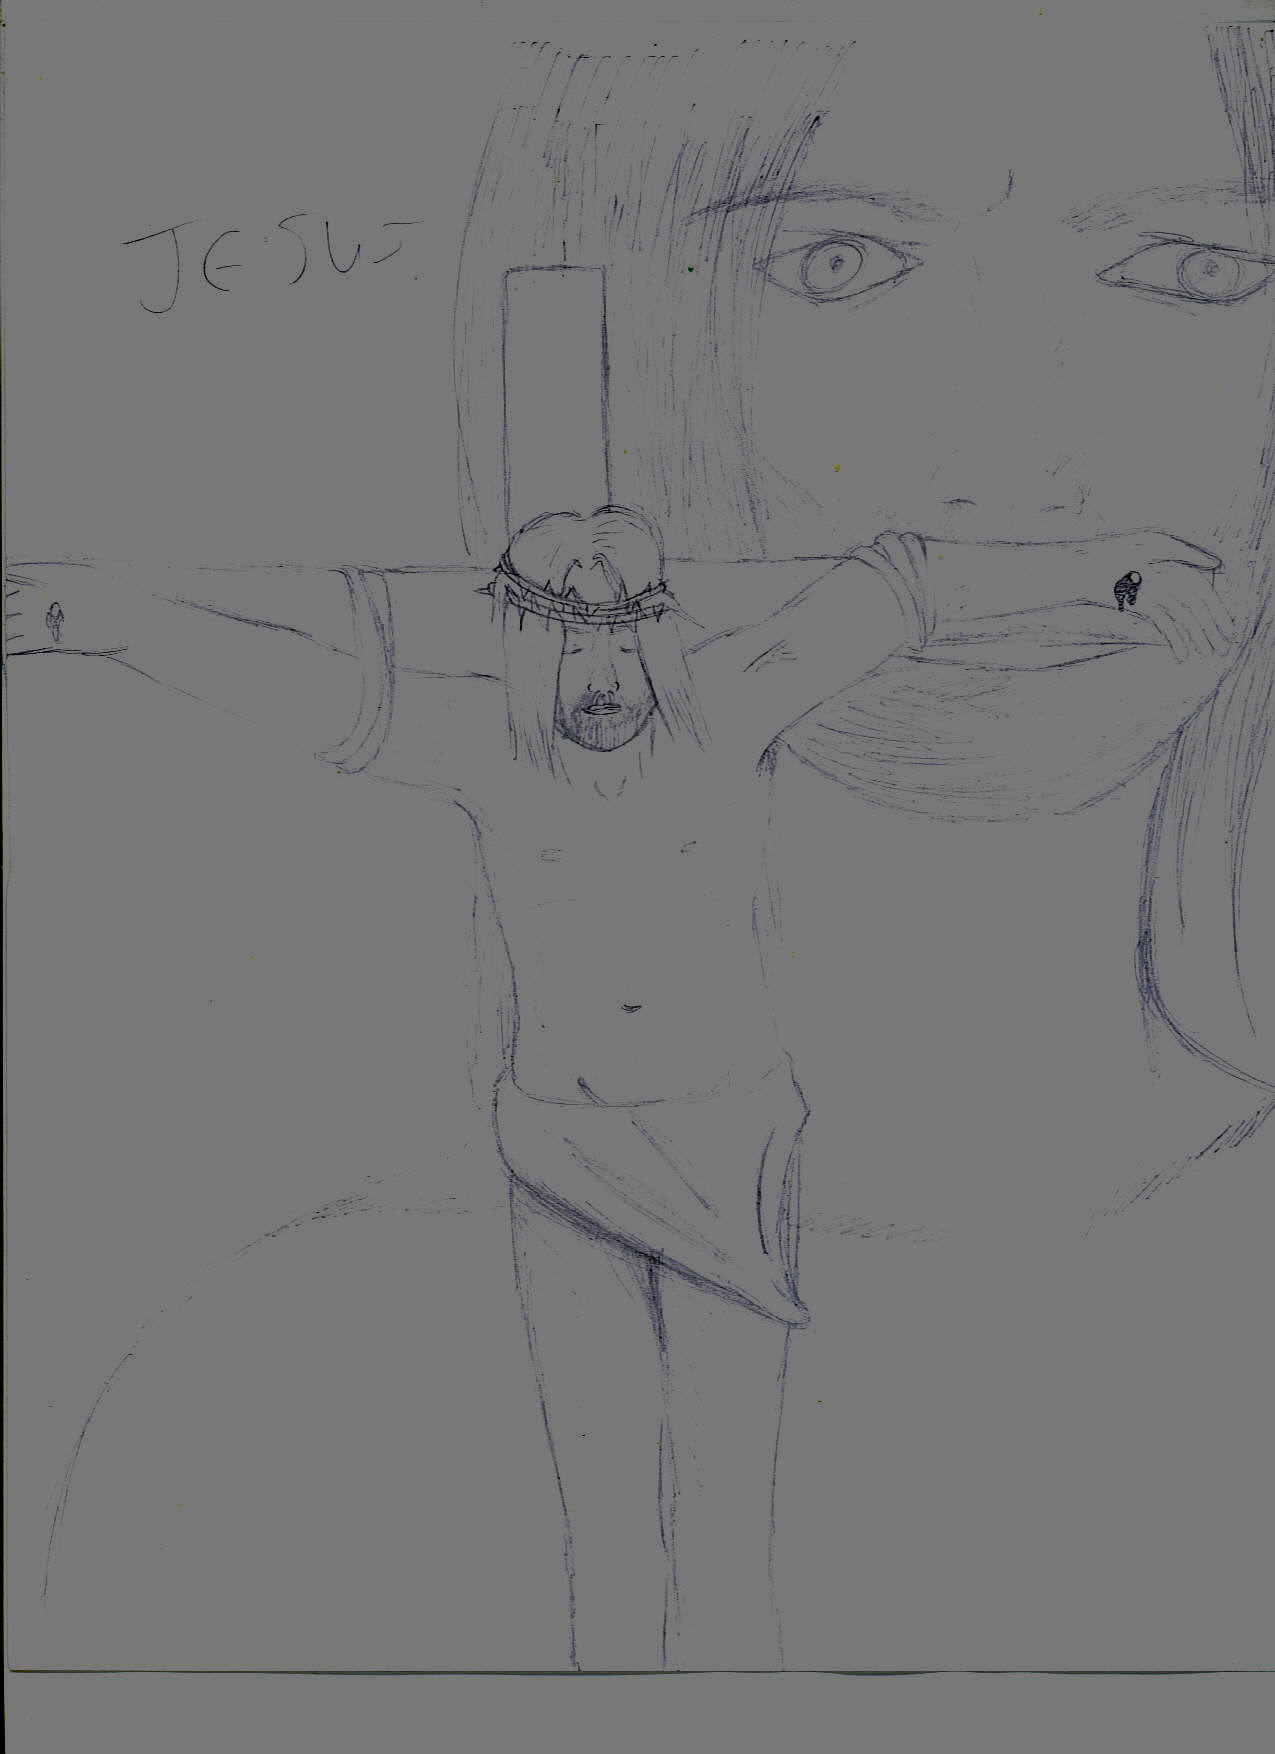 Jesus on the Cross by resident_evil_fan_